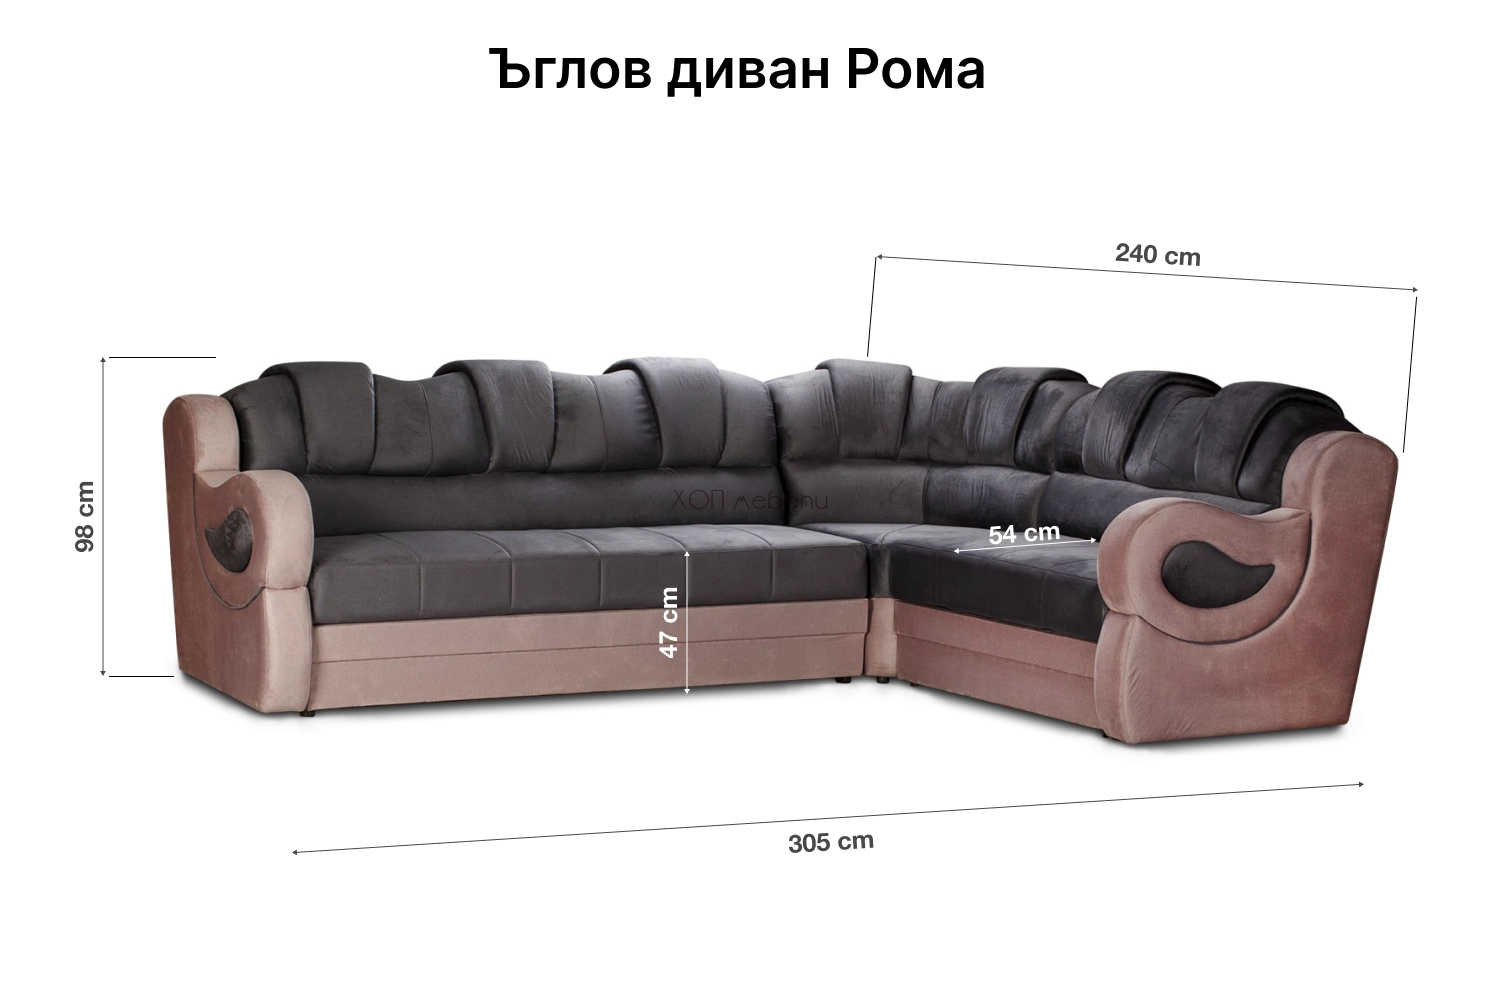 Размери на Ъглов диван Рома ID 3938 - 1